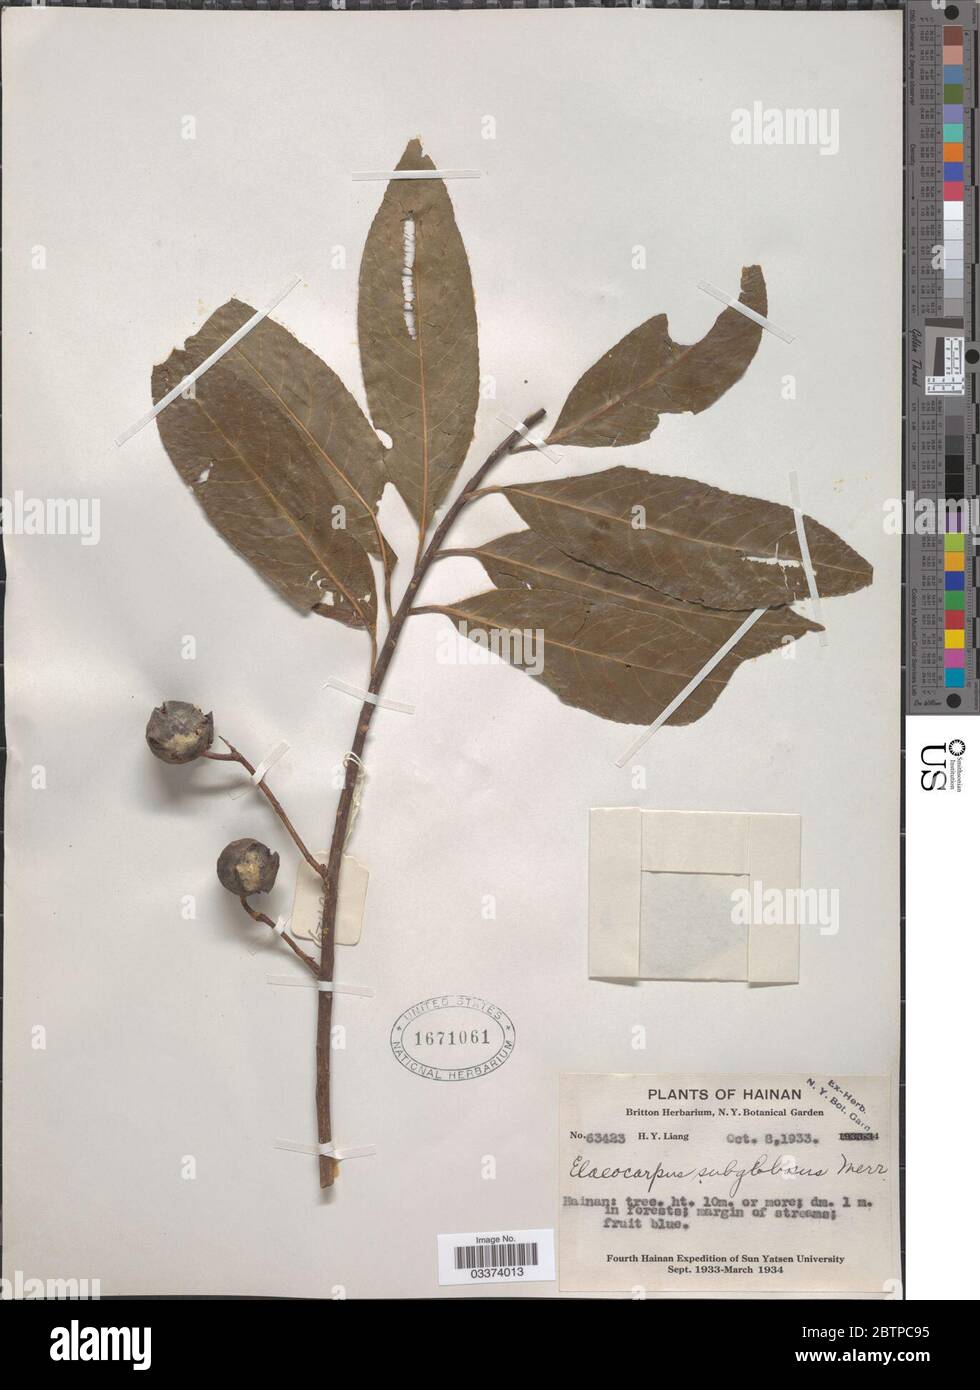 Elaeocarpus subglobosus Merr. Stock Photo